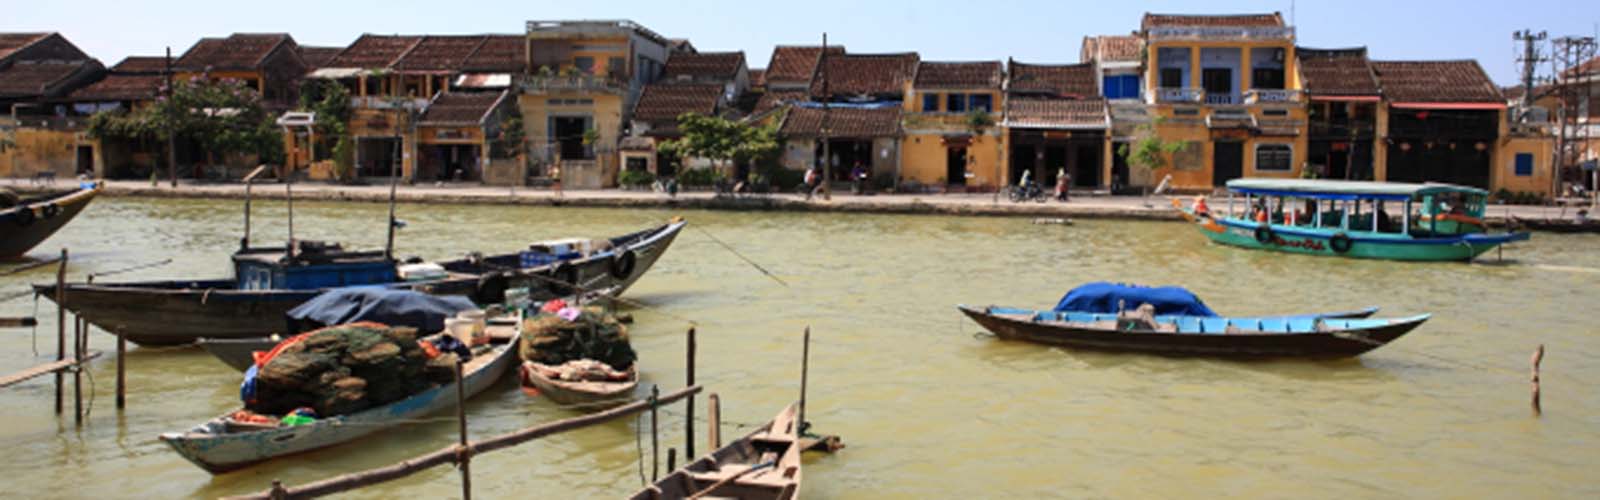 Viaggio Vietnam | Viaggio personalizzato in Vietnam | ilotustours.com